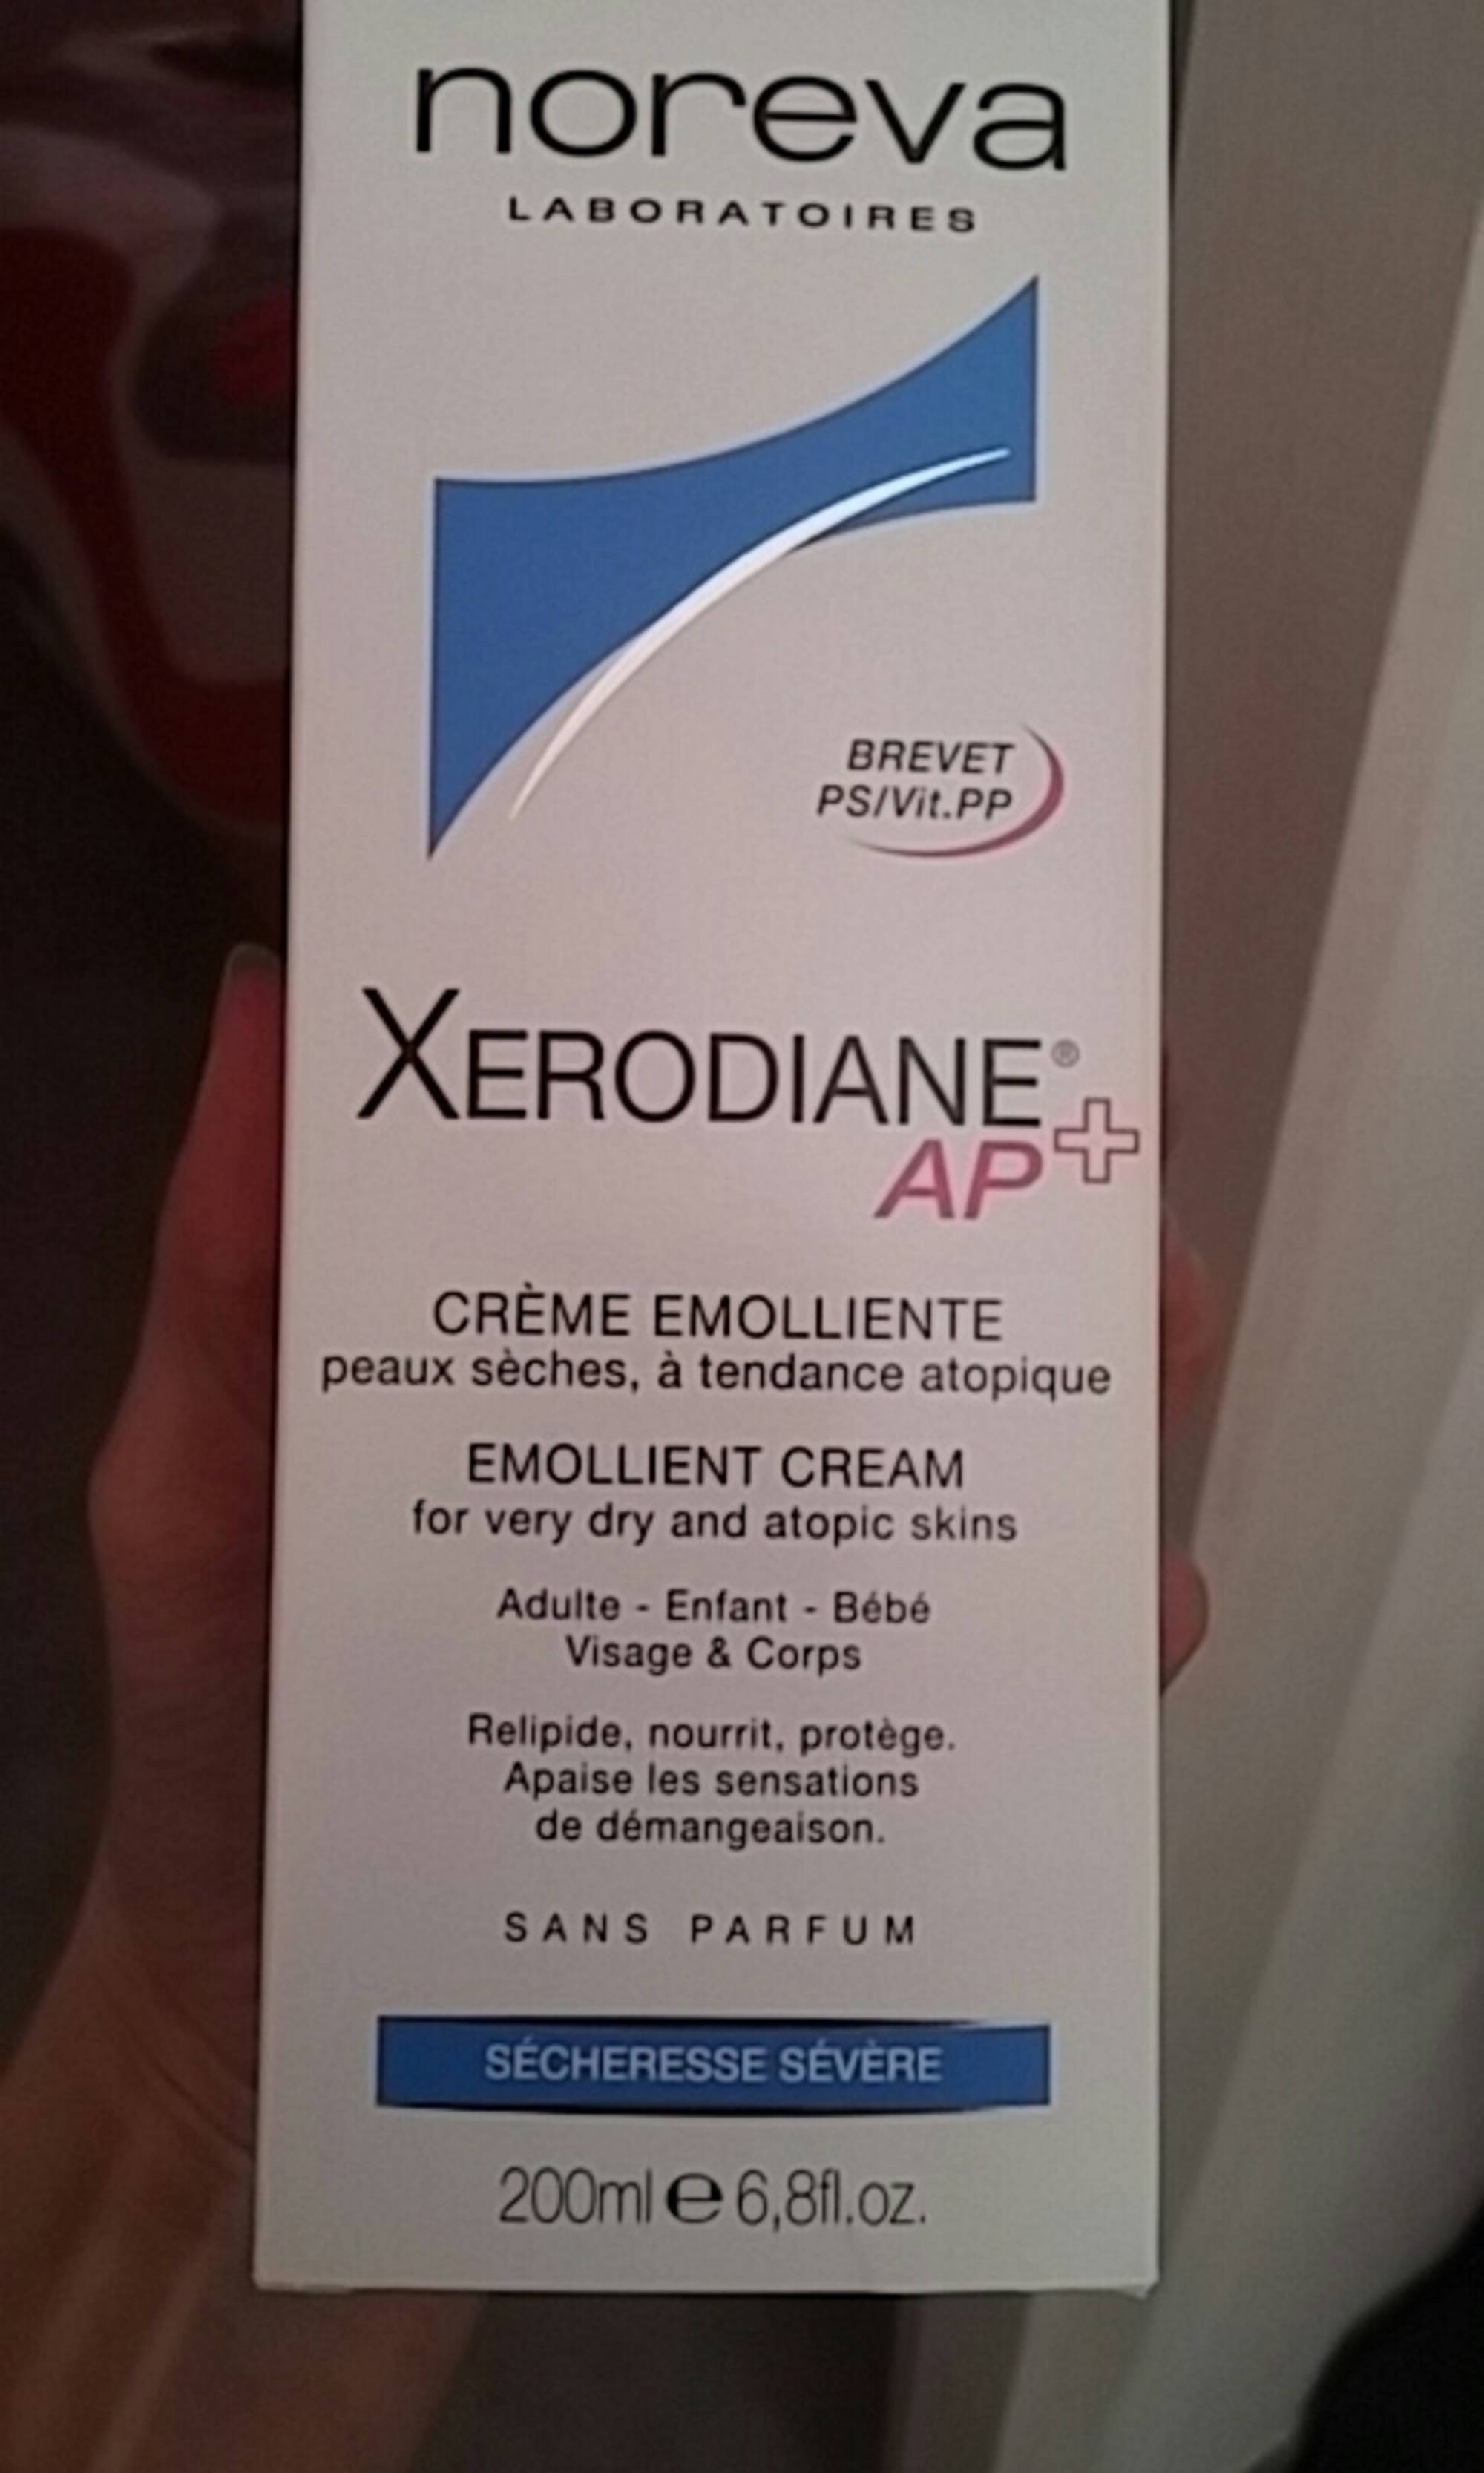 NOREVA - Xerodiane AP+ - Crème émolliente peaux sèches, à tendance atopique